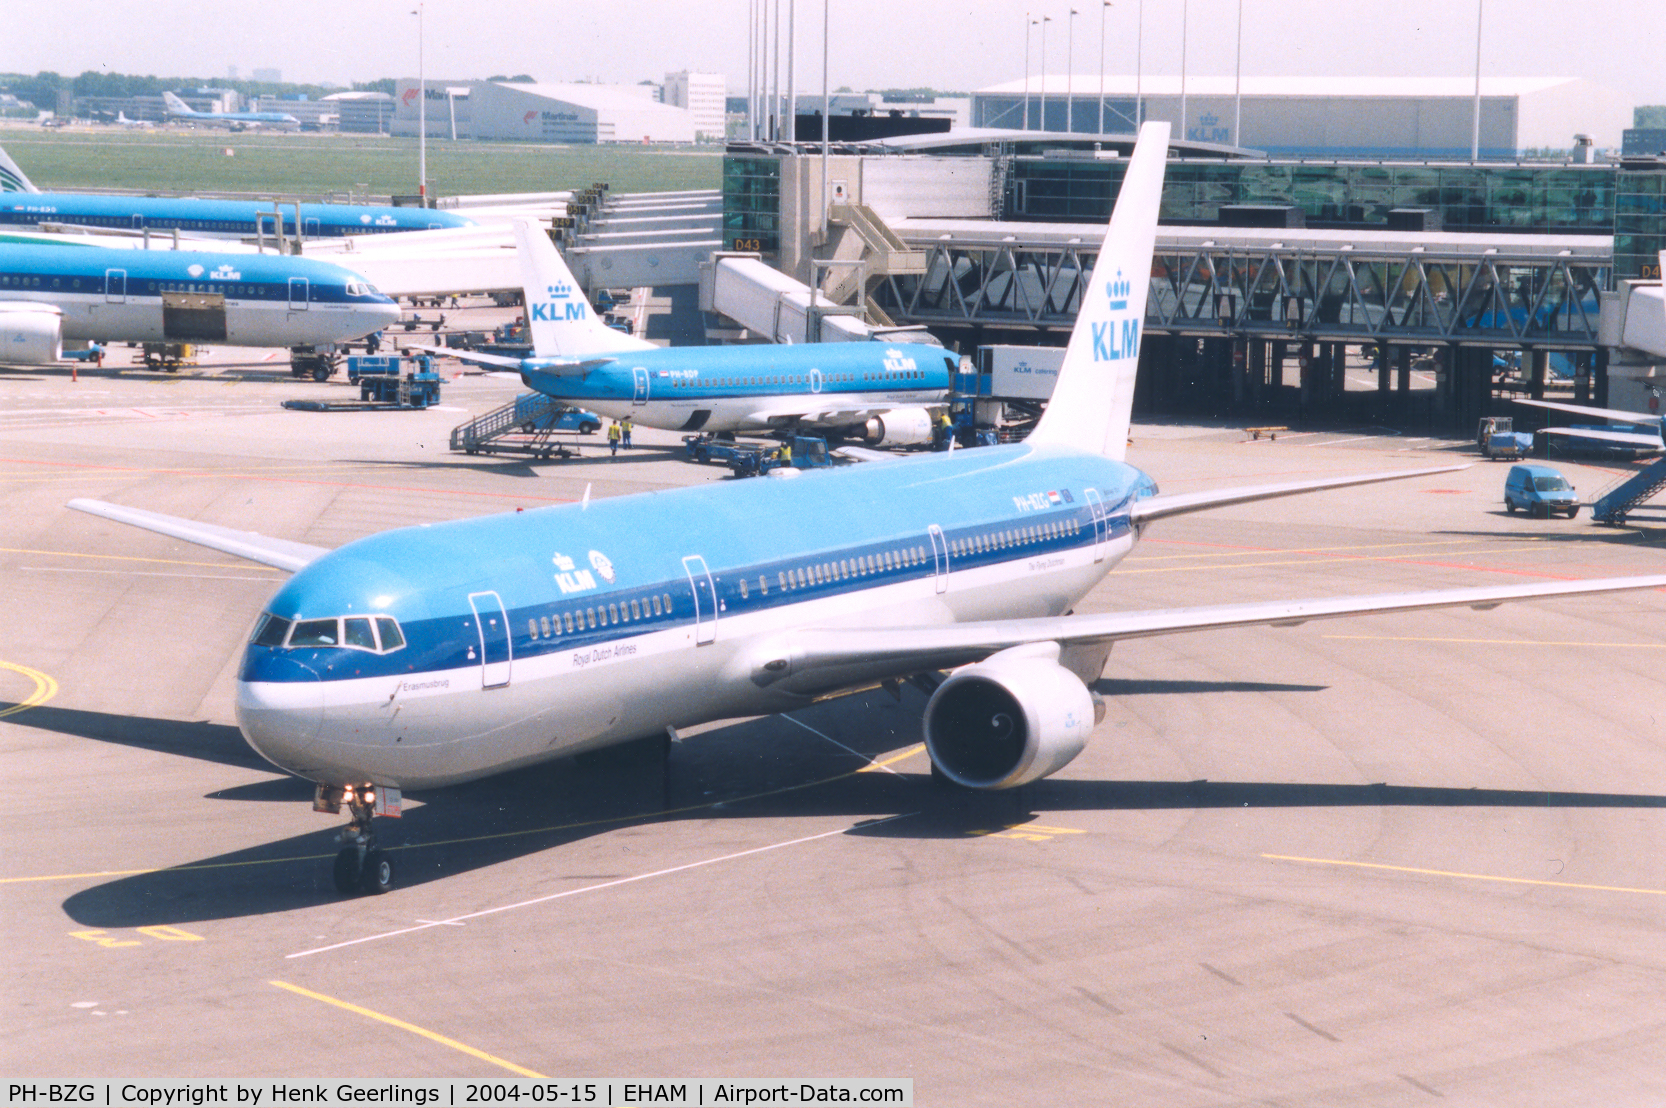 PH-BZG, 1996 Boeing 767-306/ER C/N 27960, KLM